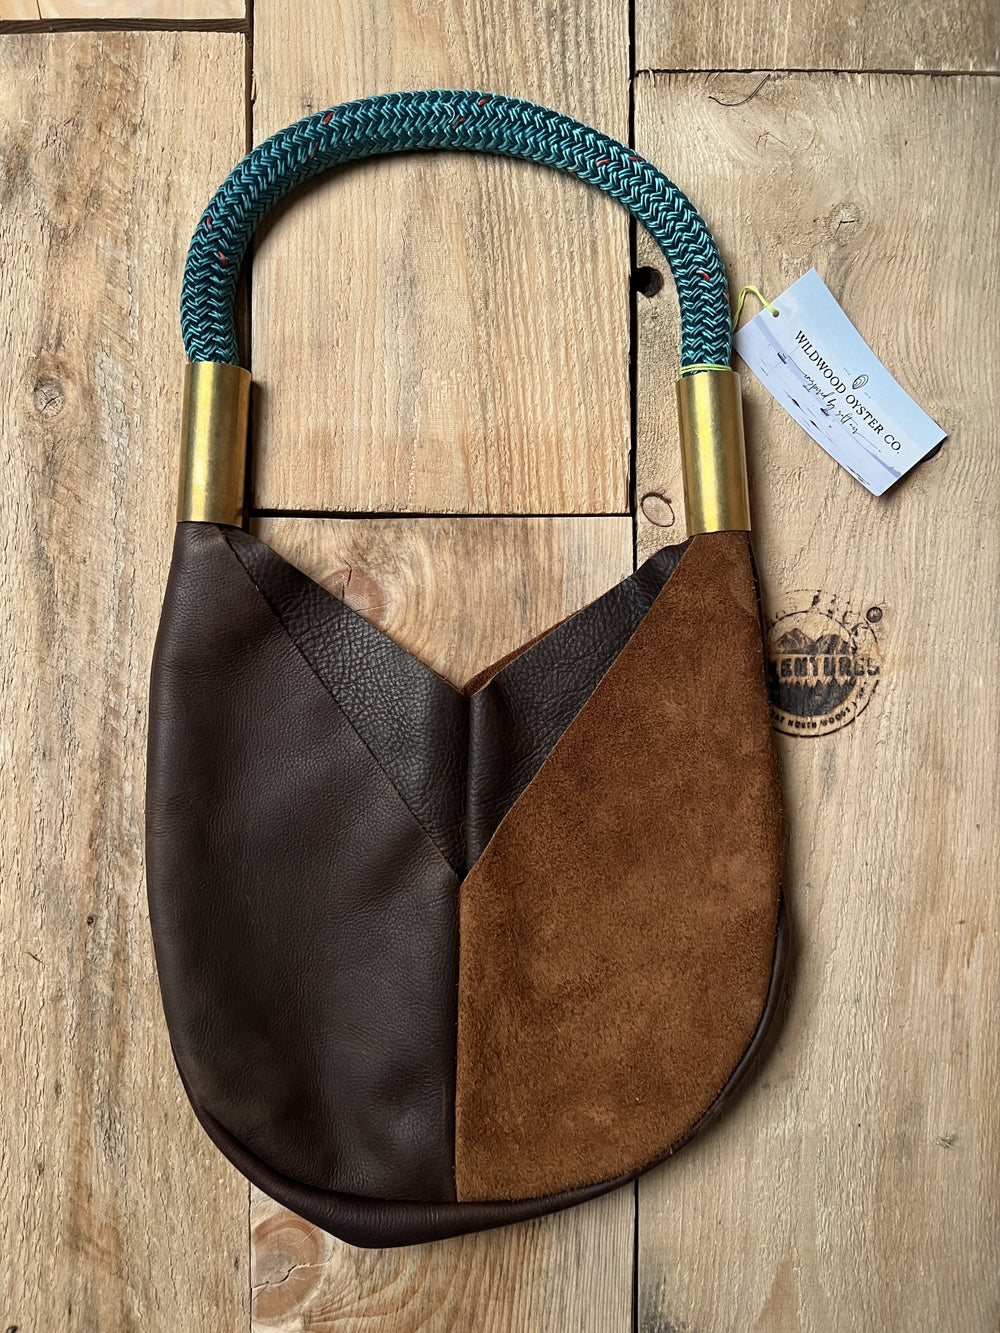 Wildwood Oyster Leather Original Tote Brown Seaside Teal